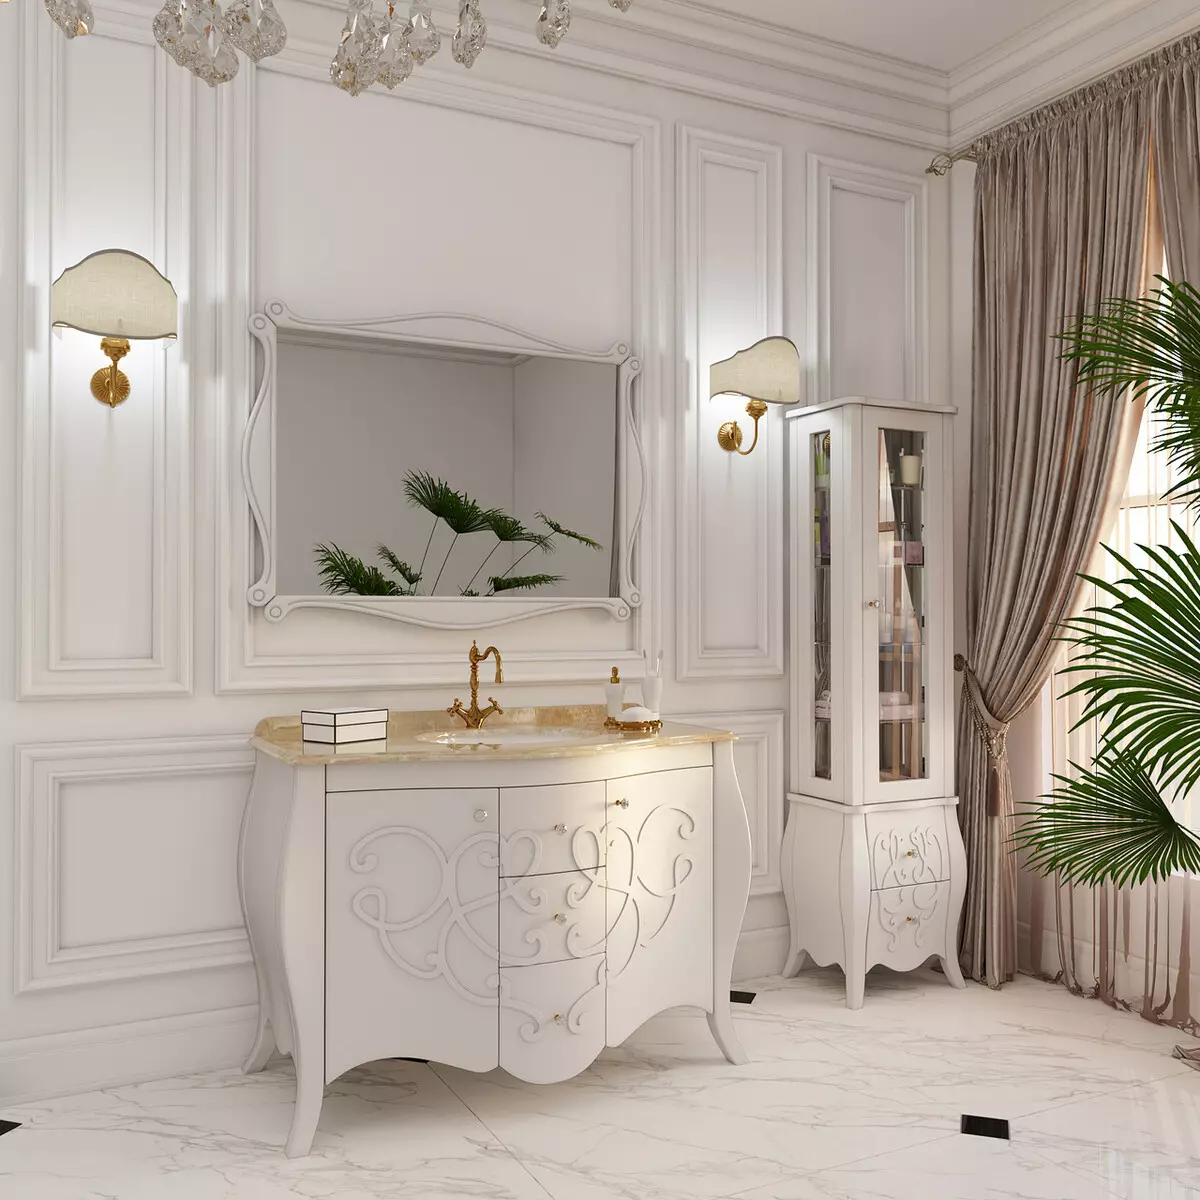 Mark badkamer aanrecht: kies marmeren gevormde modellen van witte en andere kleur in de badkamer 10423_6